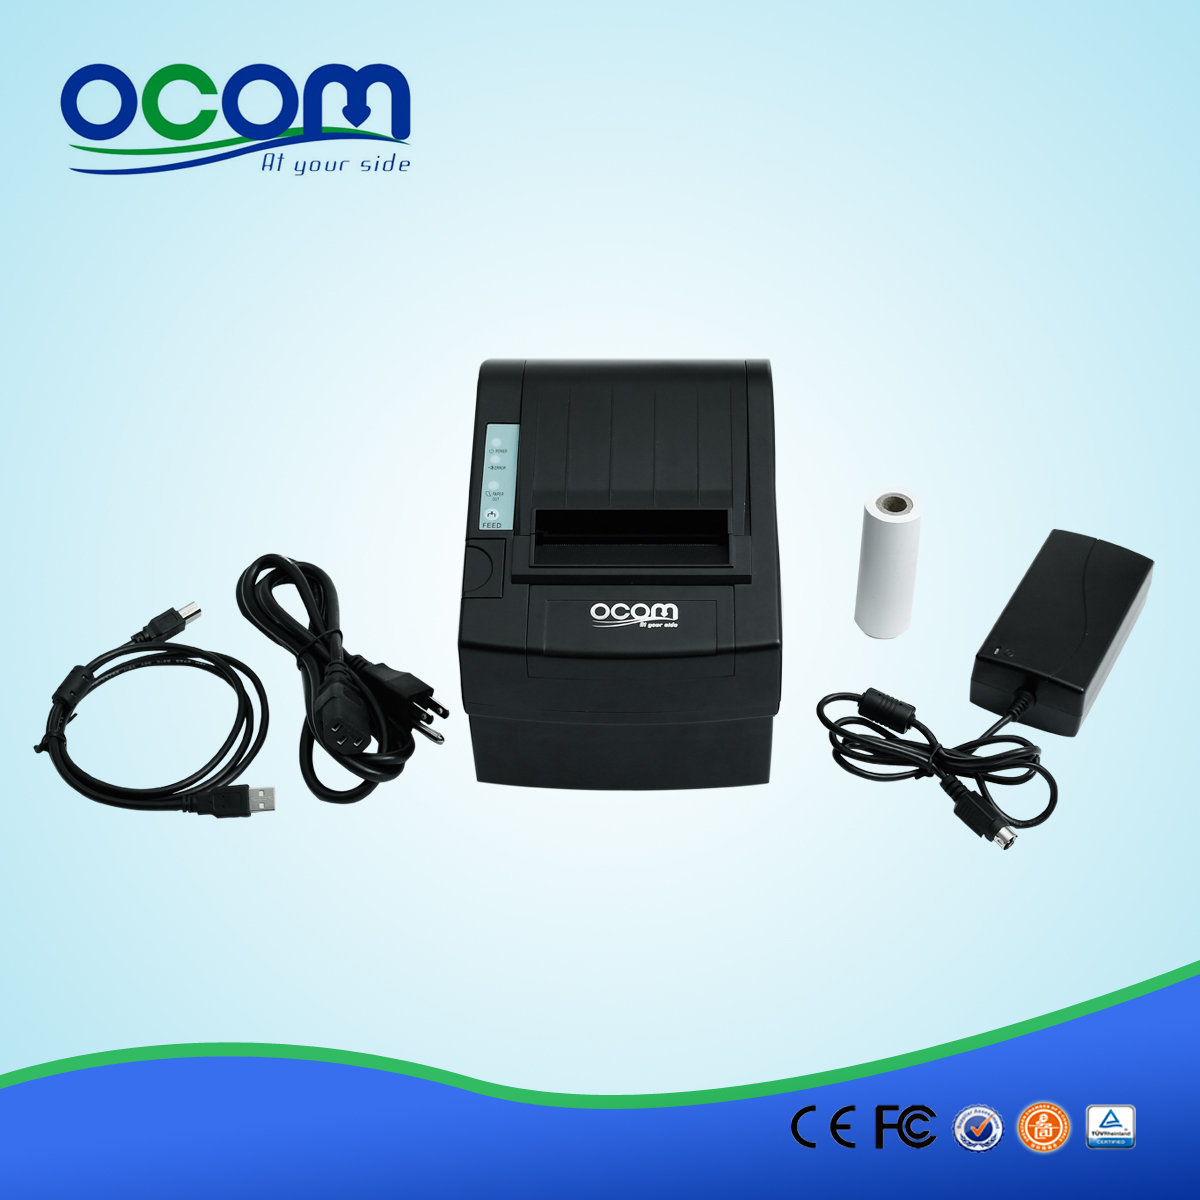 80mm высокое качество получение беспроводной POS WiFi-принтера OCPP-806-W